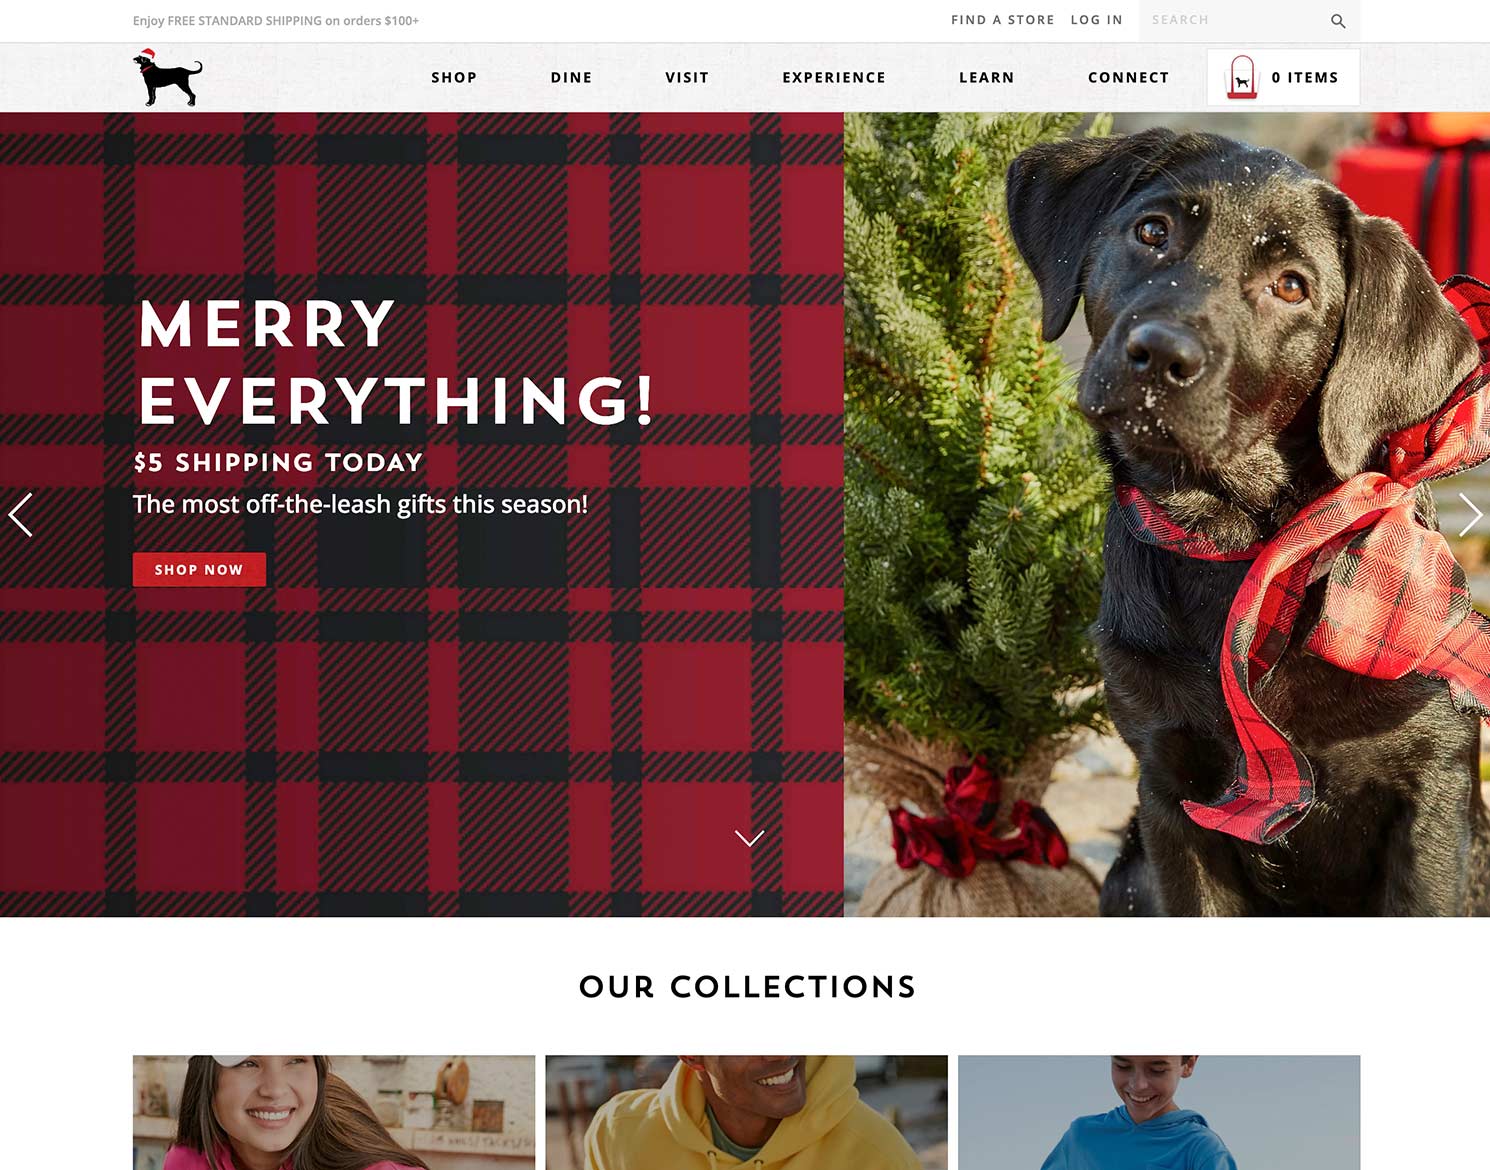 The Black Dog website design homepage